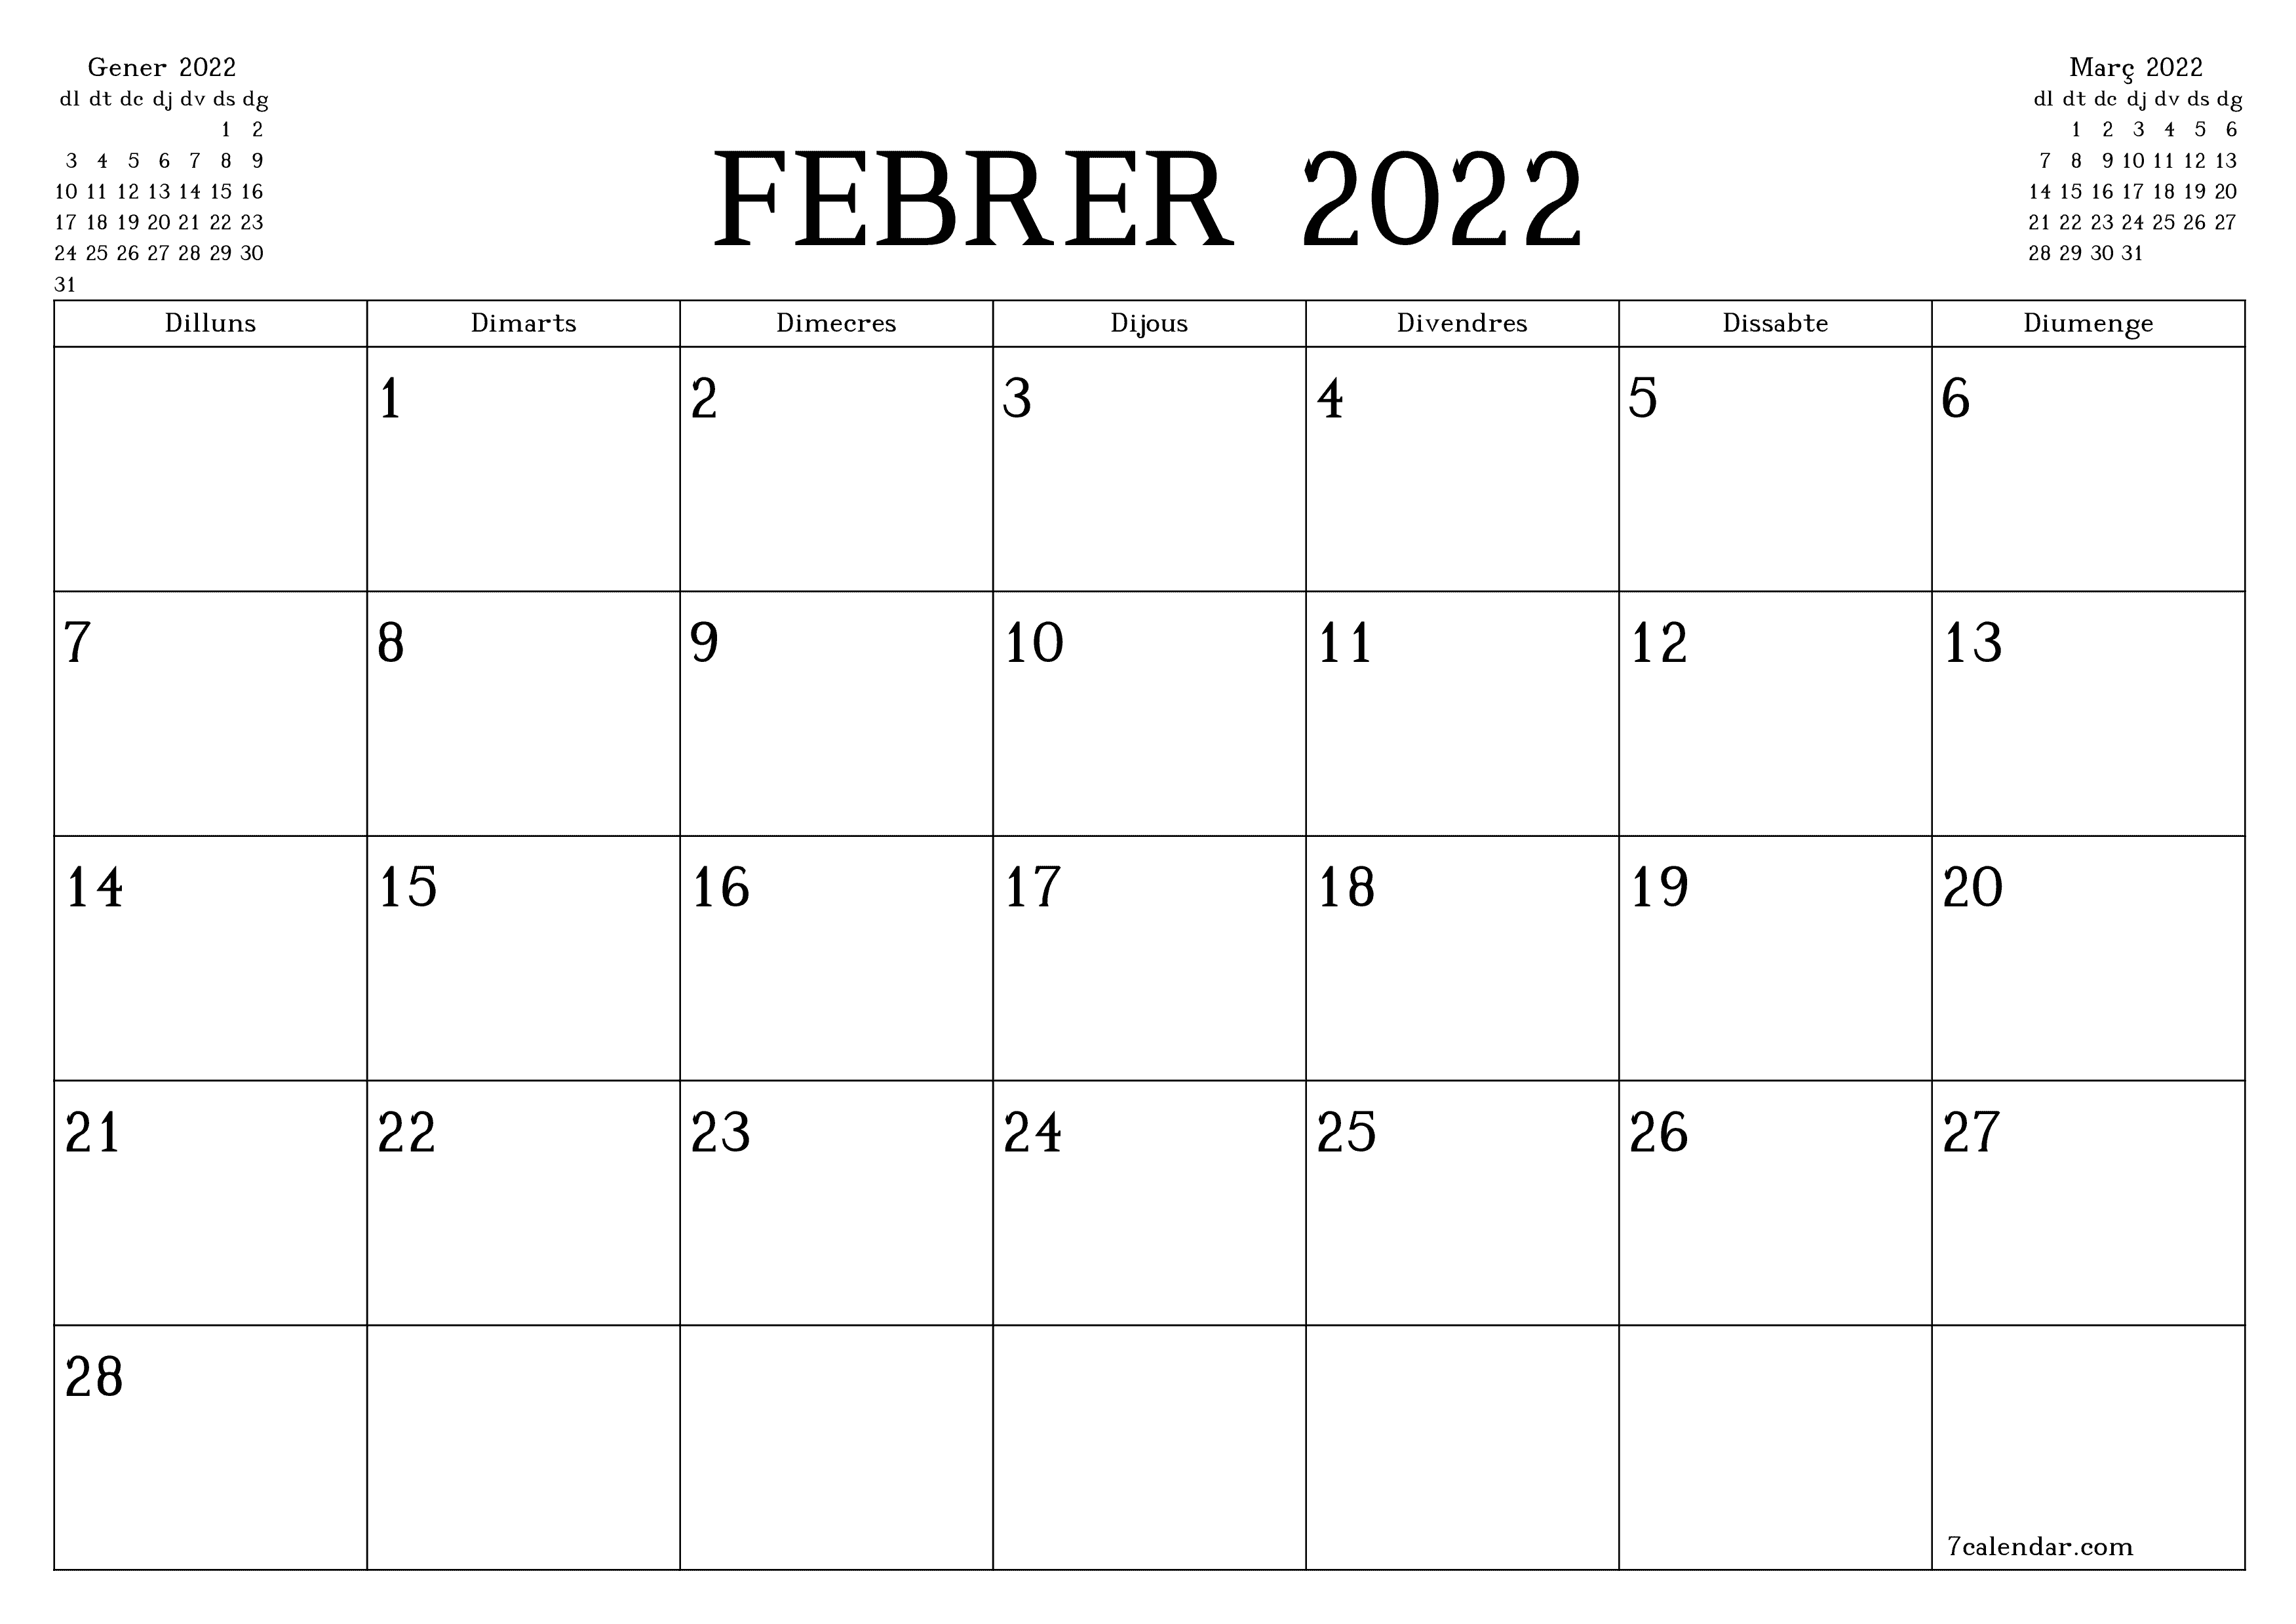 La magia del 22 de febrero del 2022: un día (casi) irrepetible